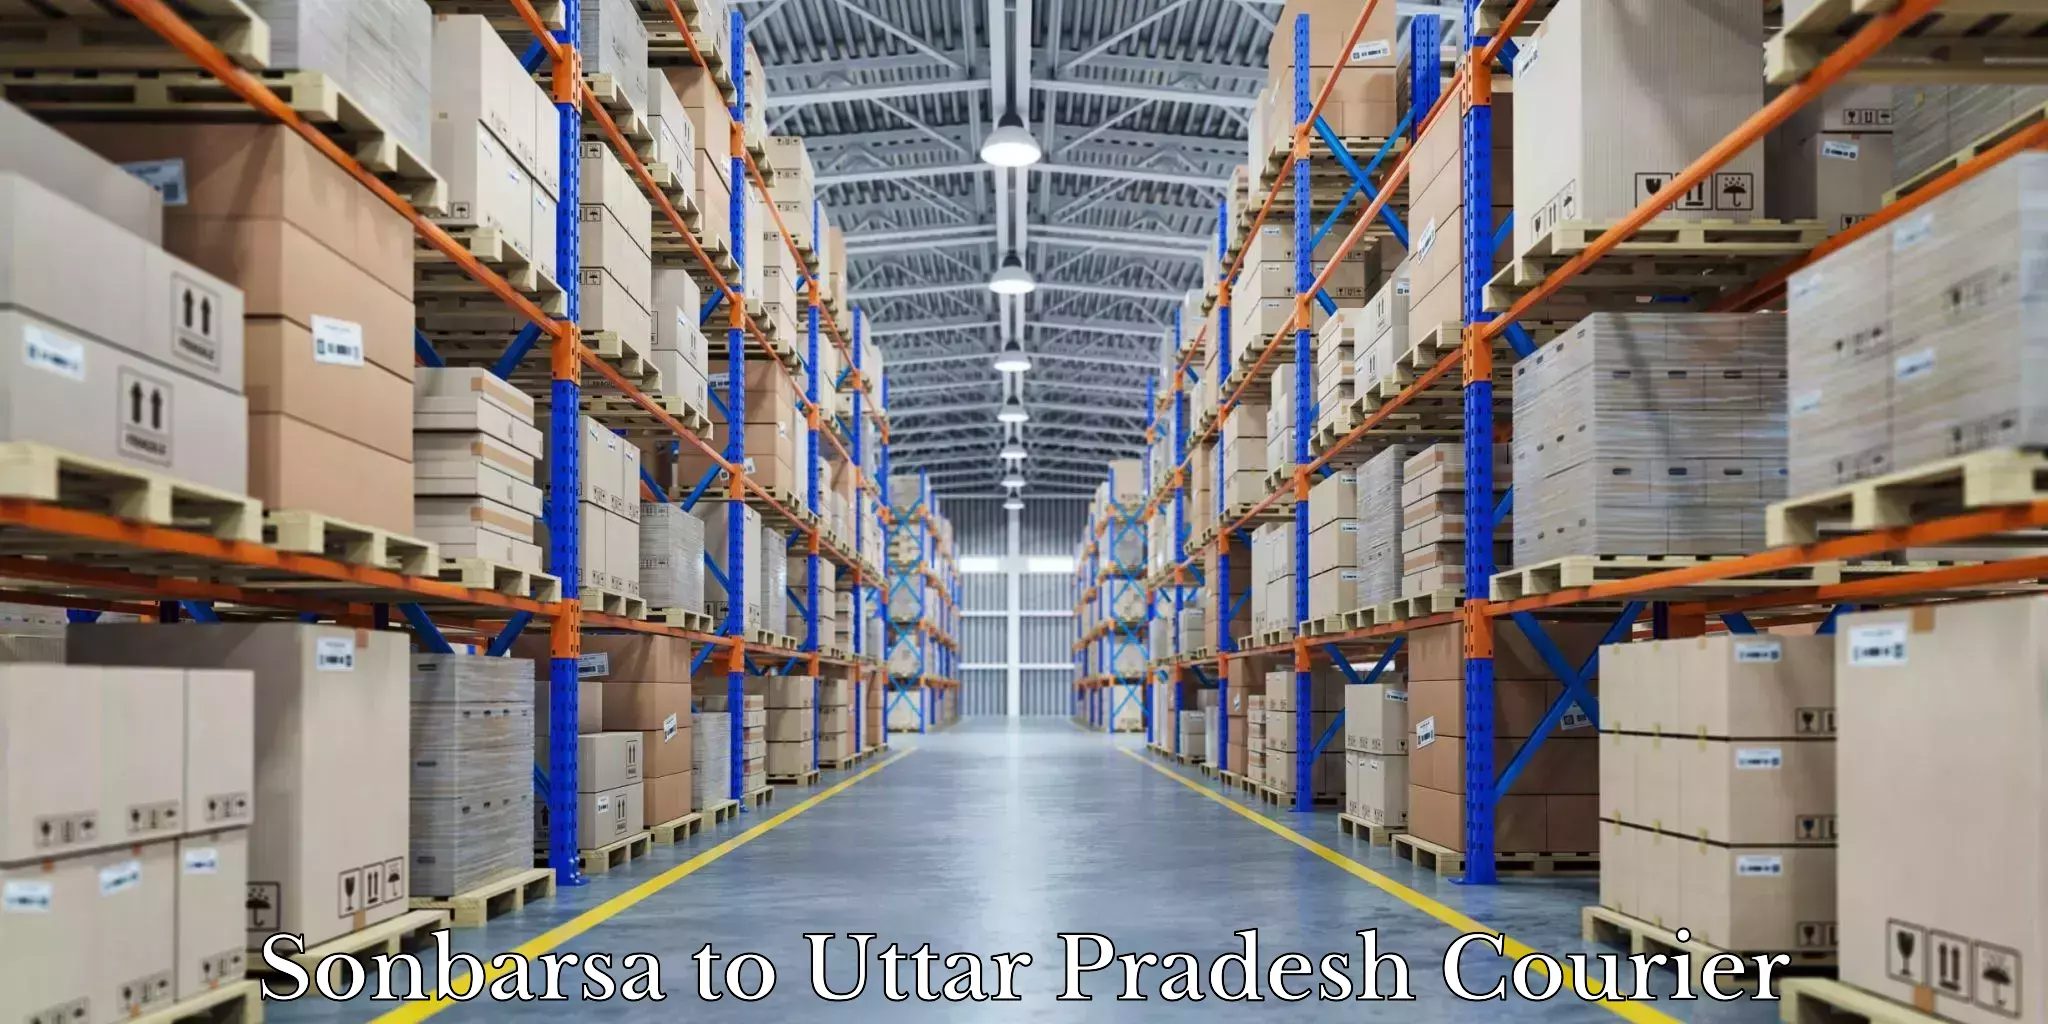 Moving and storage services Sonbarsa to Uttar Pradesh